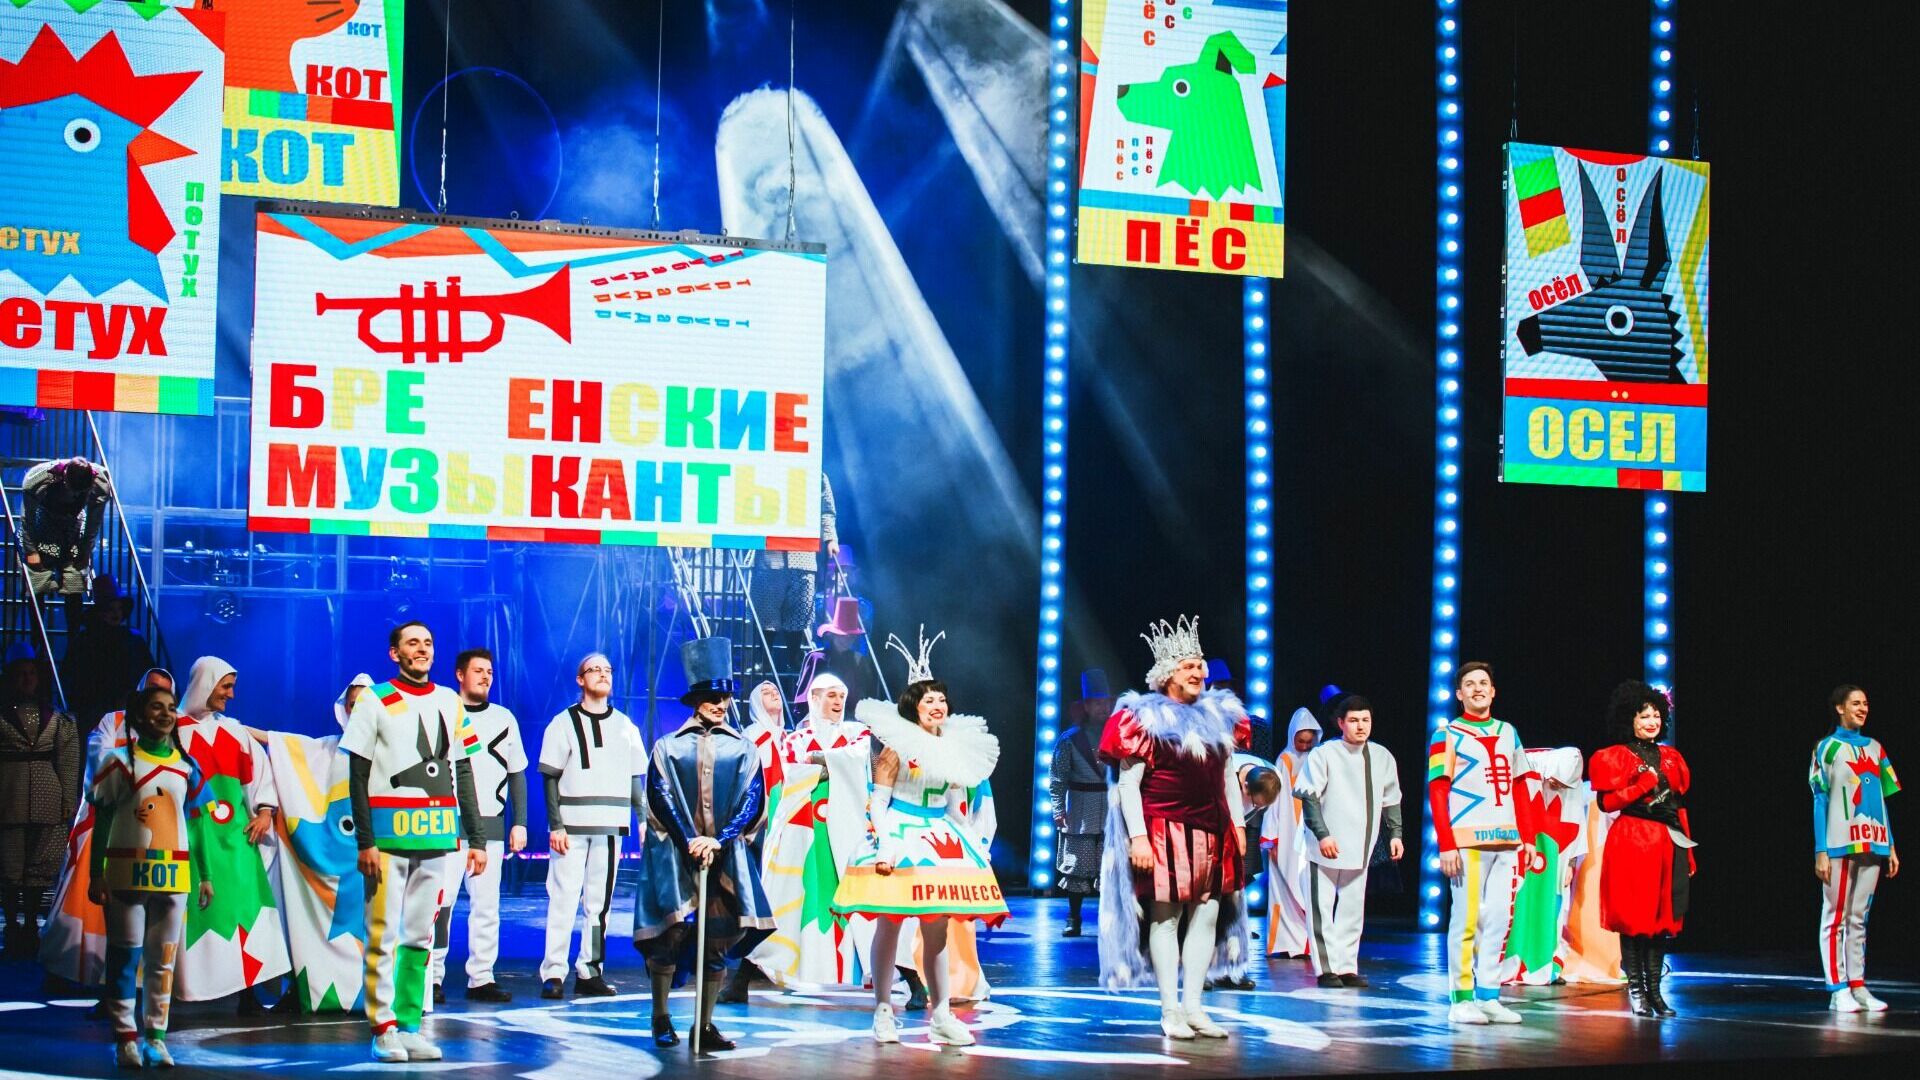 Хабаровский краевой музыкальный театр представил премьеру семейного мюзикла